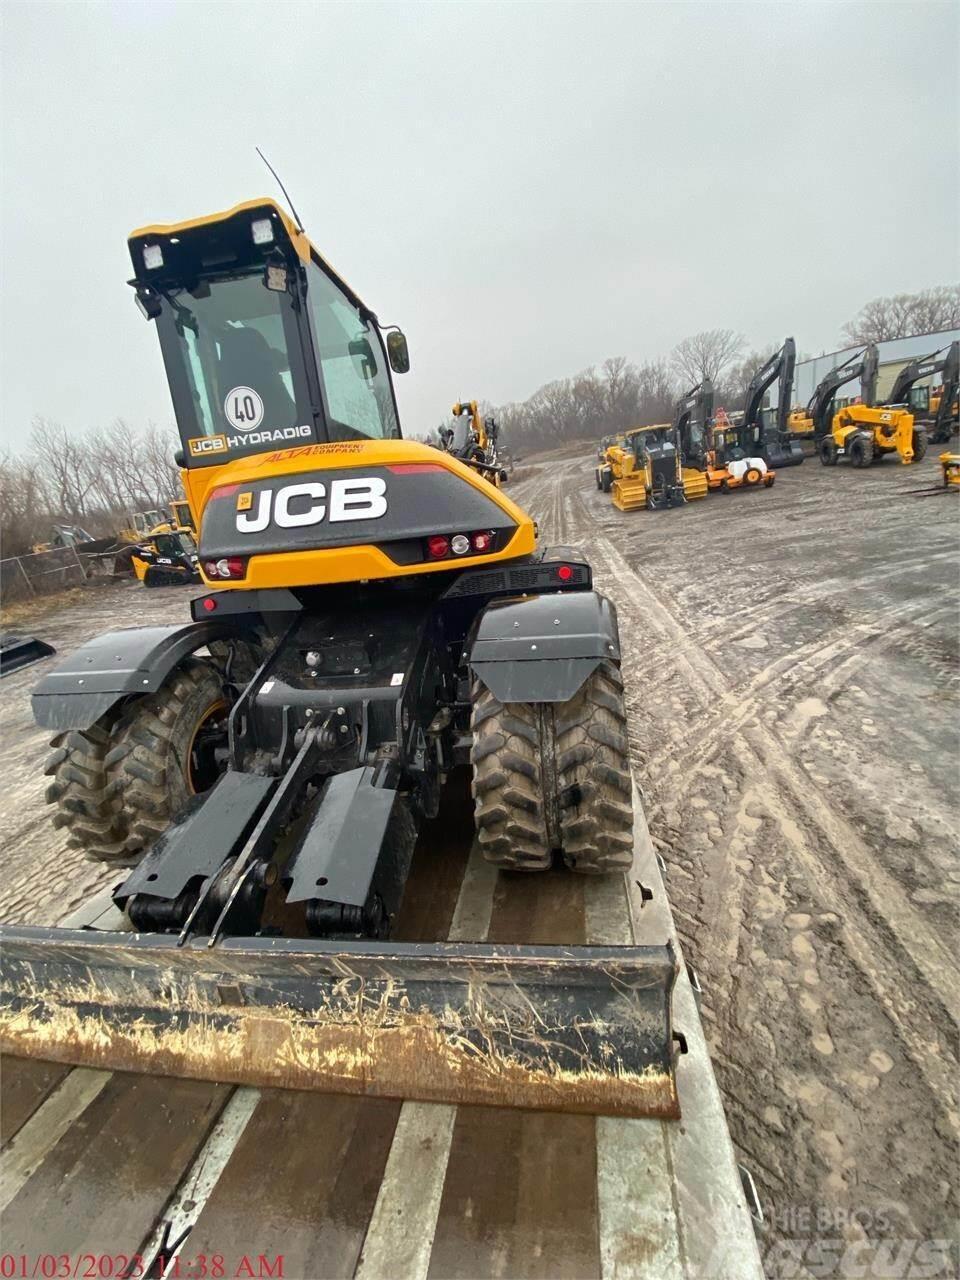 JCB HD110W Wheeled excavators